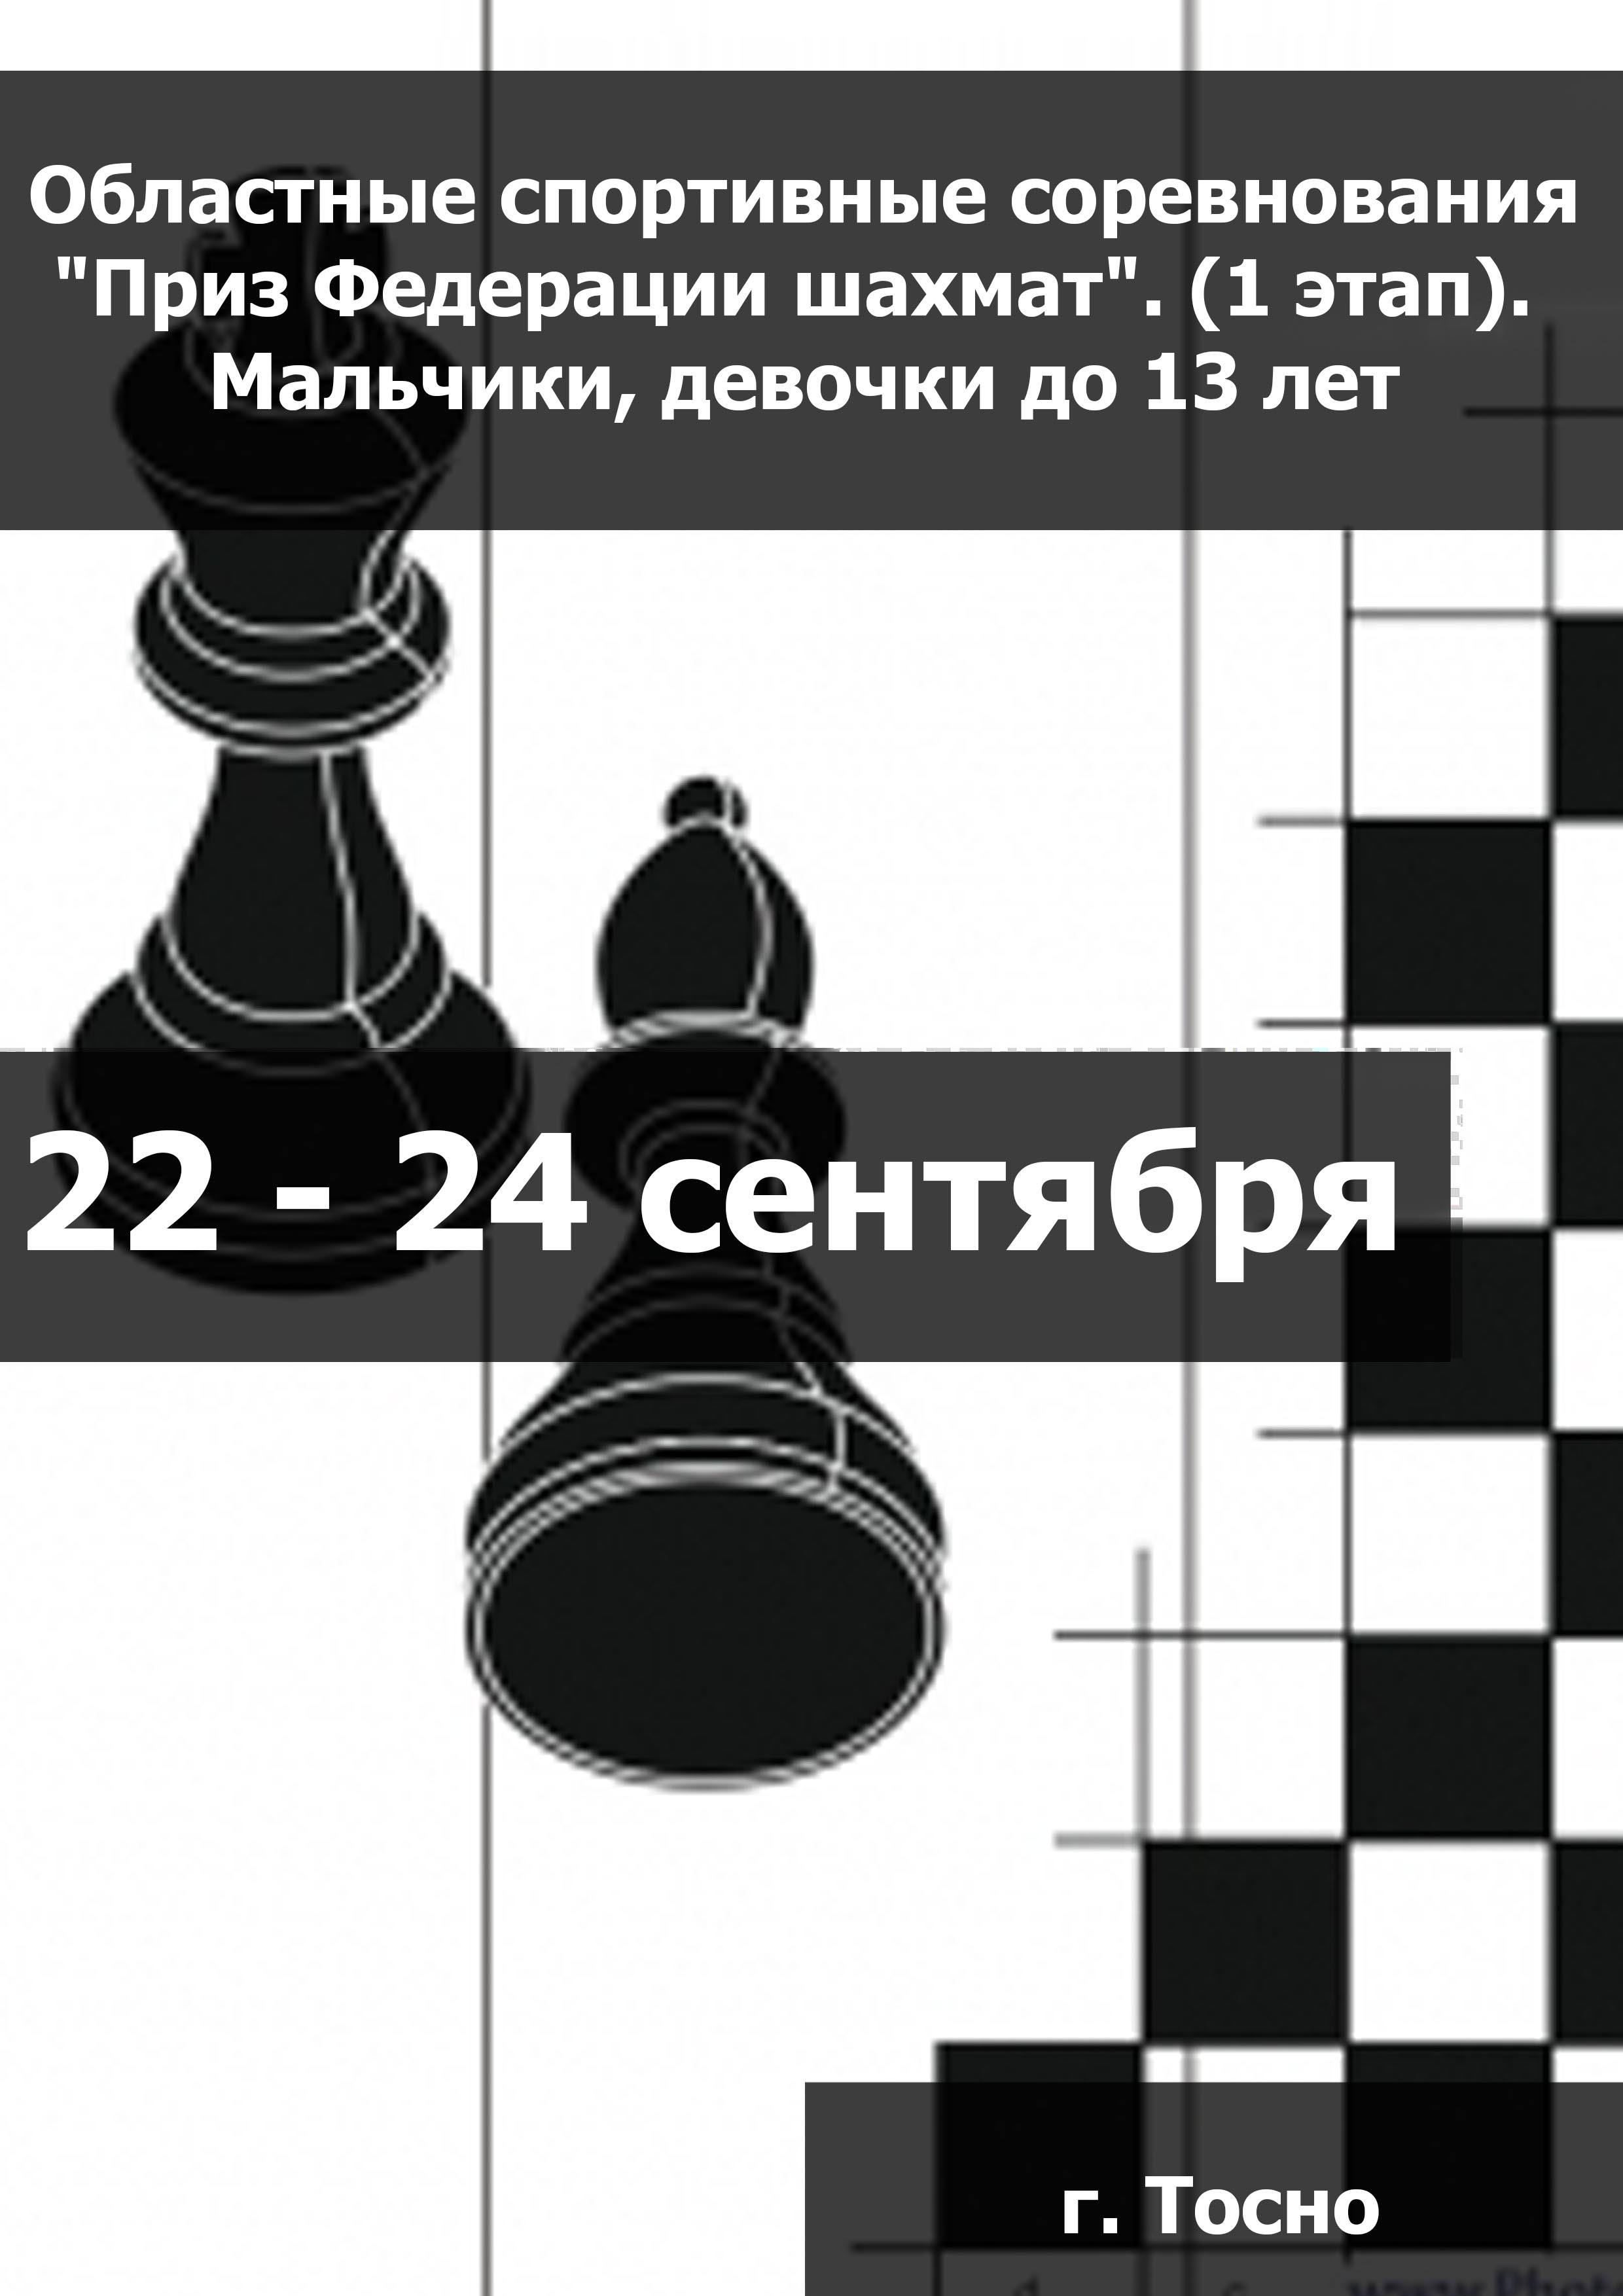 Областные спортивные соревнования "Приз Федерации шахмат". (1 этап).  Мальчики, девочки до 13 лет  22  september
 2023  tahun
 